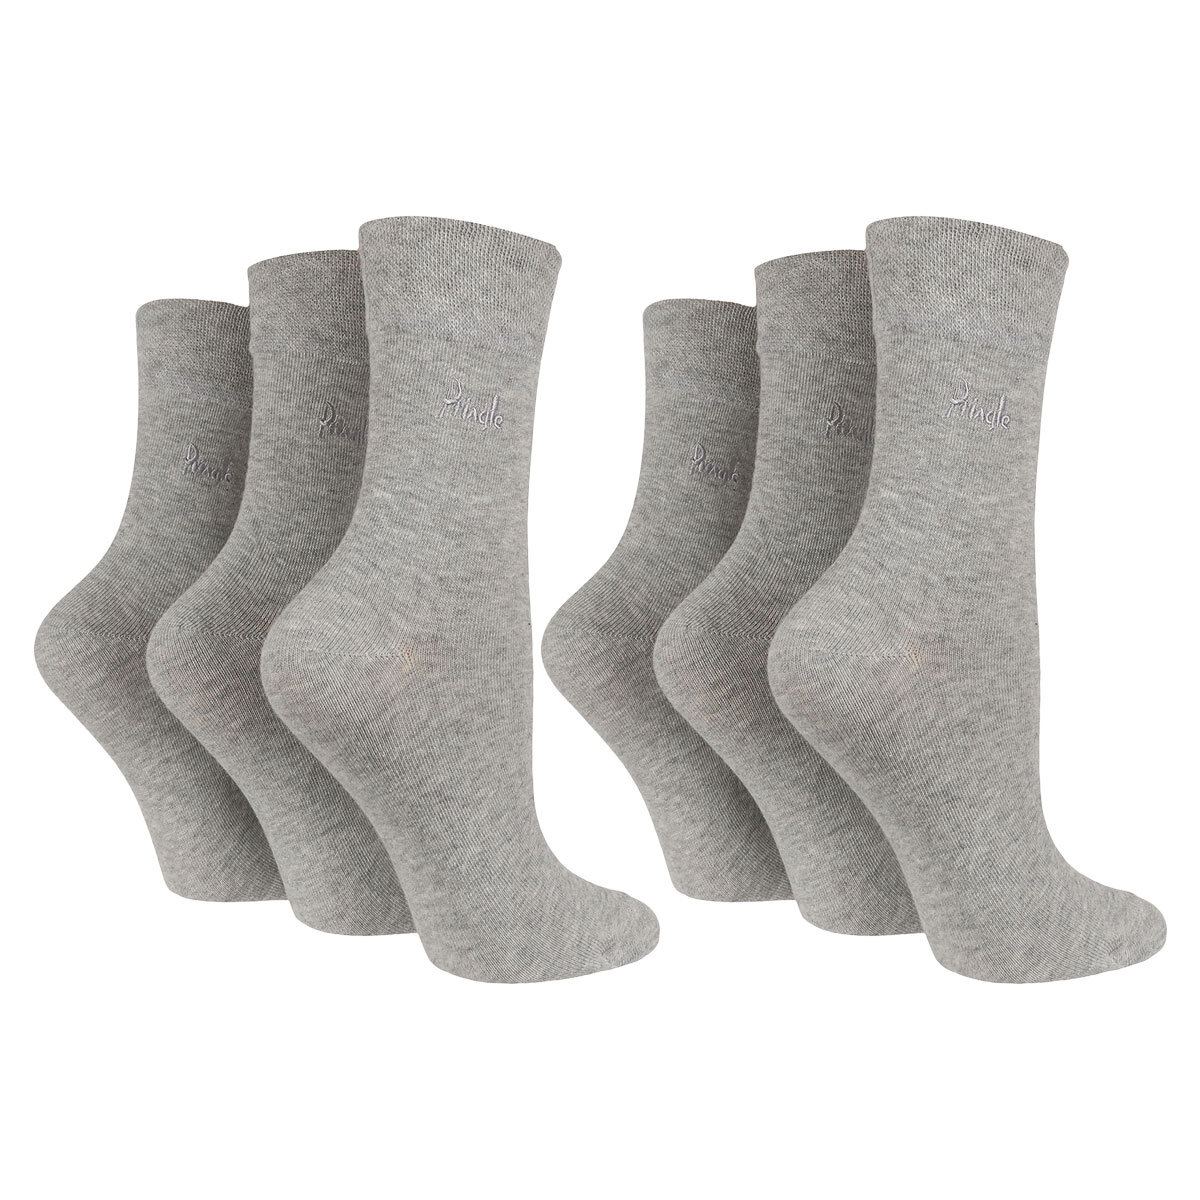 Gentle Grip Socks - 3 Pack